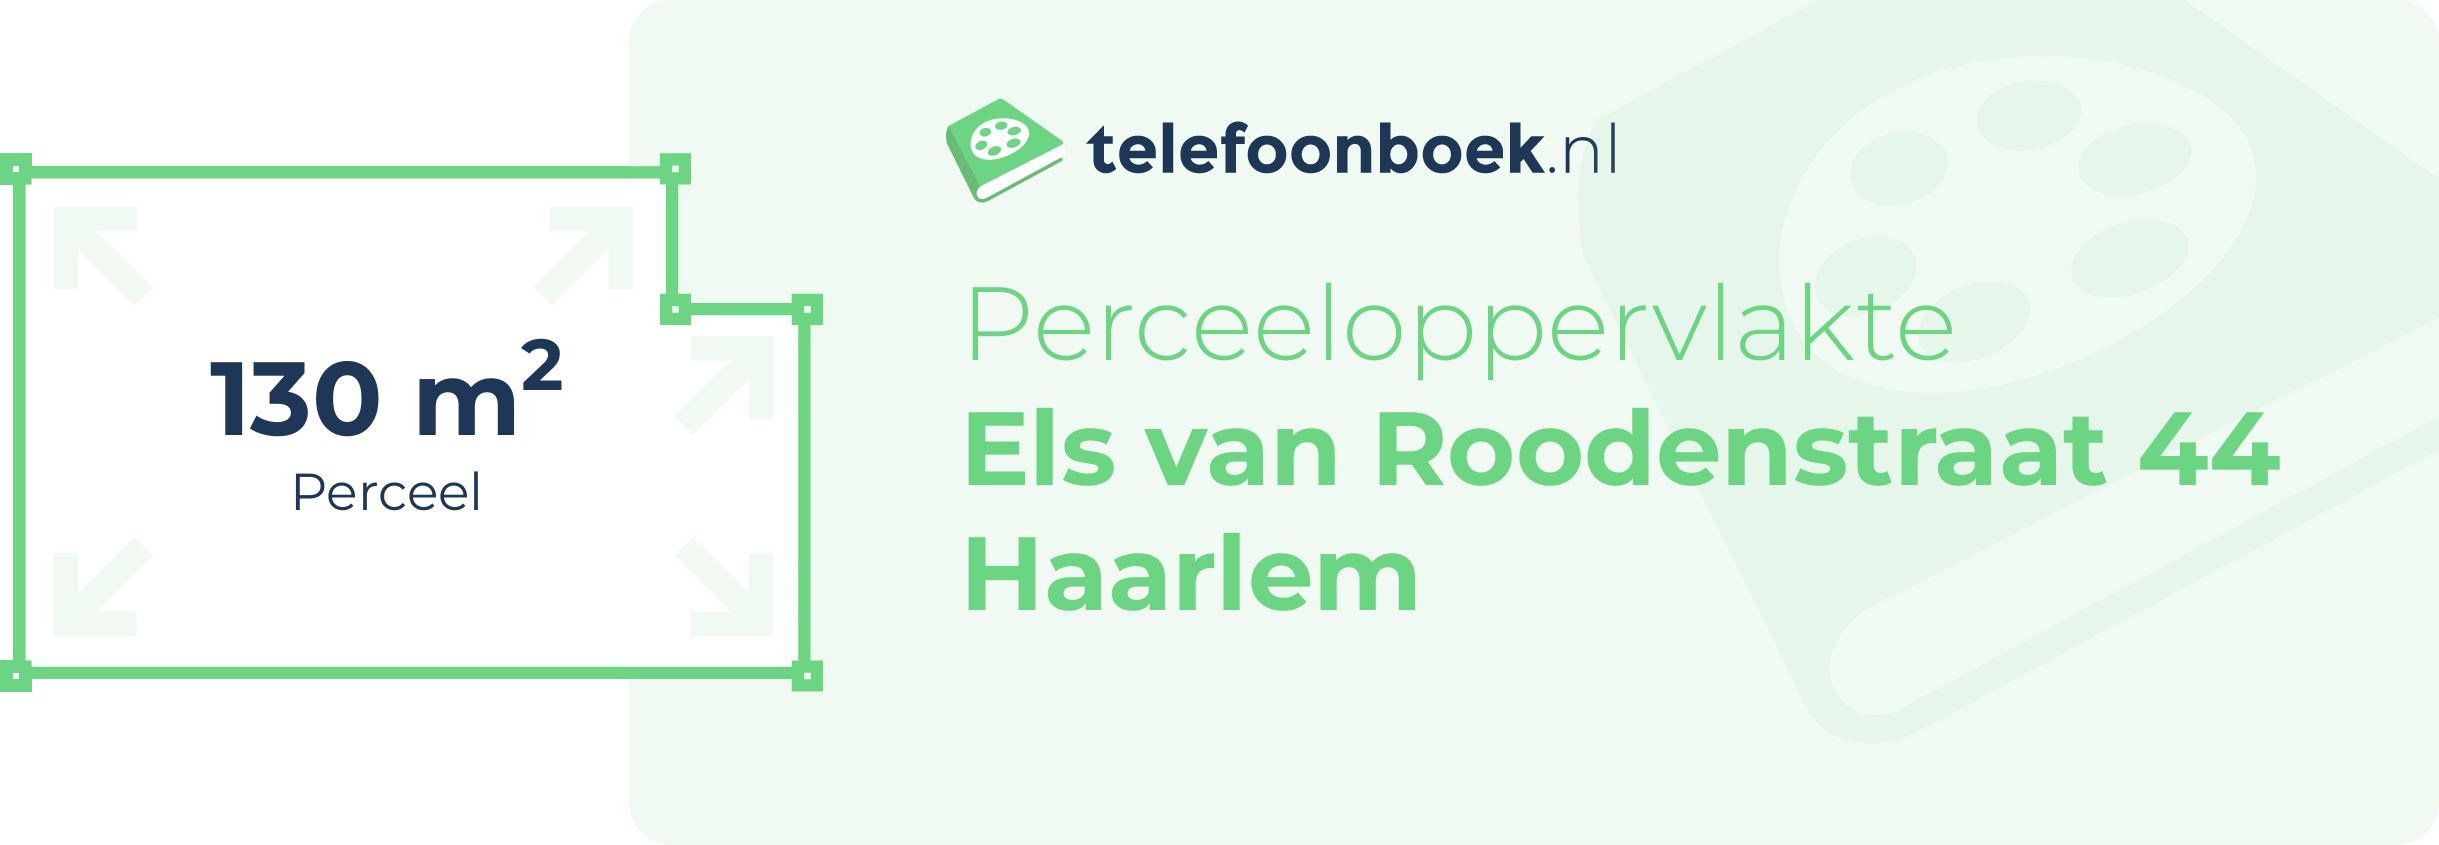 Perceeloppervlakte Els Van Roodenstraat 44 Haarlem